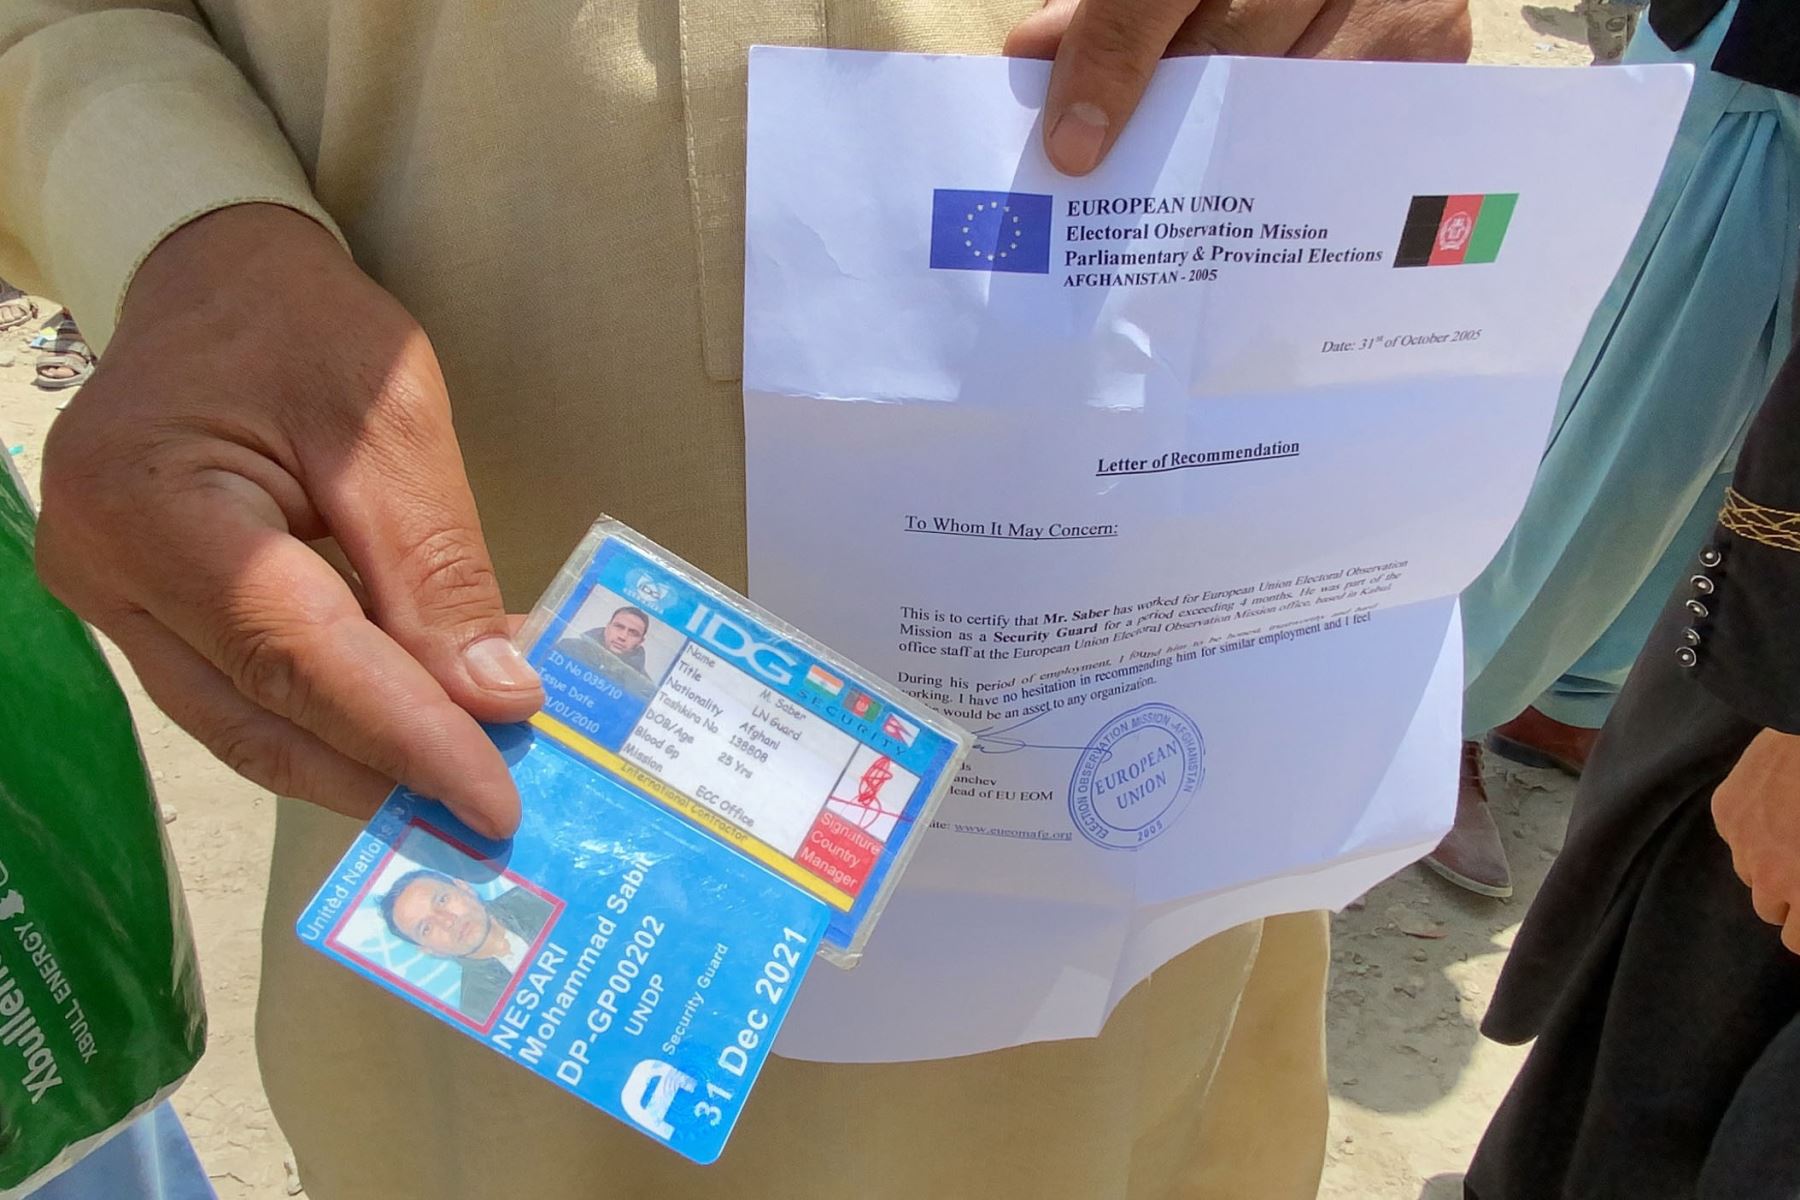 Un afgano que trabajaba para la Unión Europea en Afganistán muestra sus documentos mientras espera fuera del aeropuerto internacional Hamid Karzai para huir del país, después de que los talibanes tomaran el control de Kabul, Afganistán.
Foto: EFE